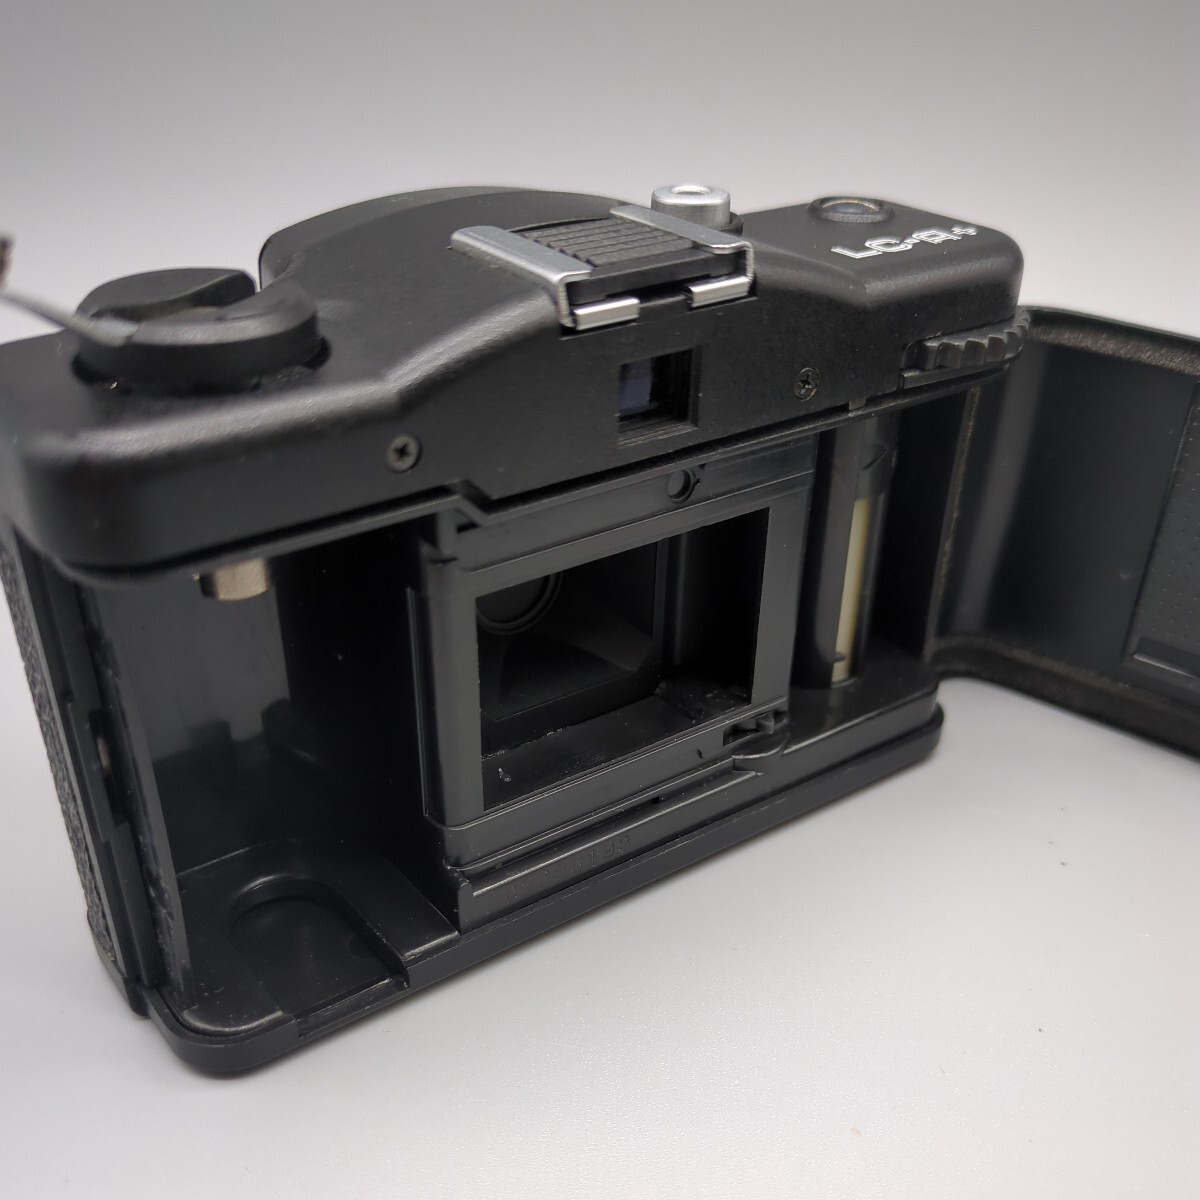 【外観美品】Lomography LOMO LC-A+ トイカメラ フィルムカメラ ロモグラフィー MINITAR 1 32mm F2.8 付属品多数の画像6